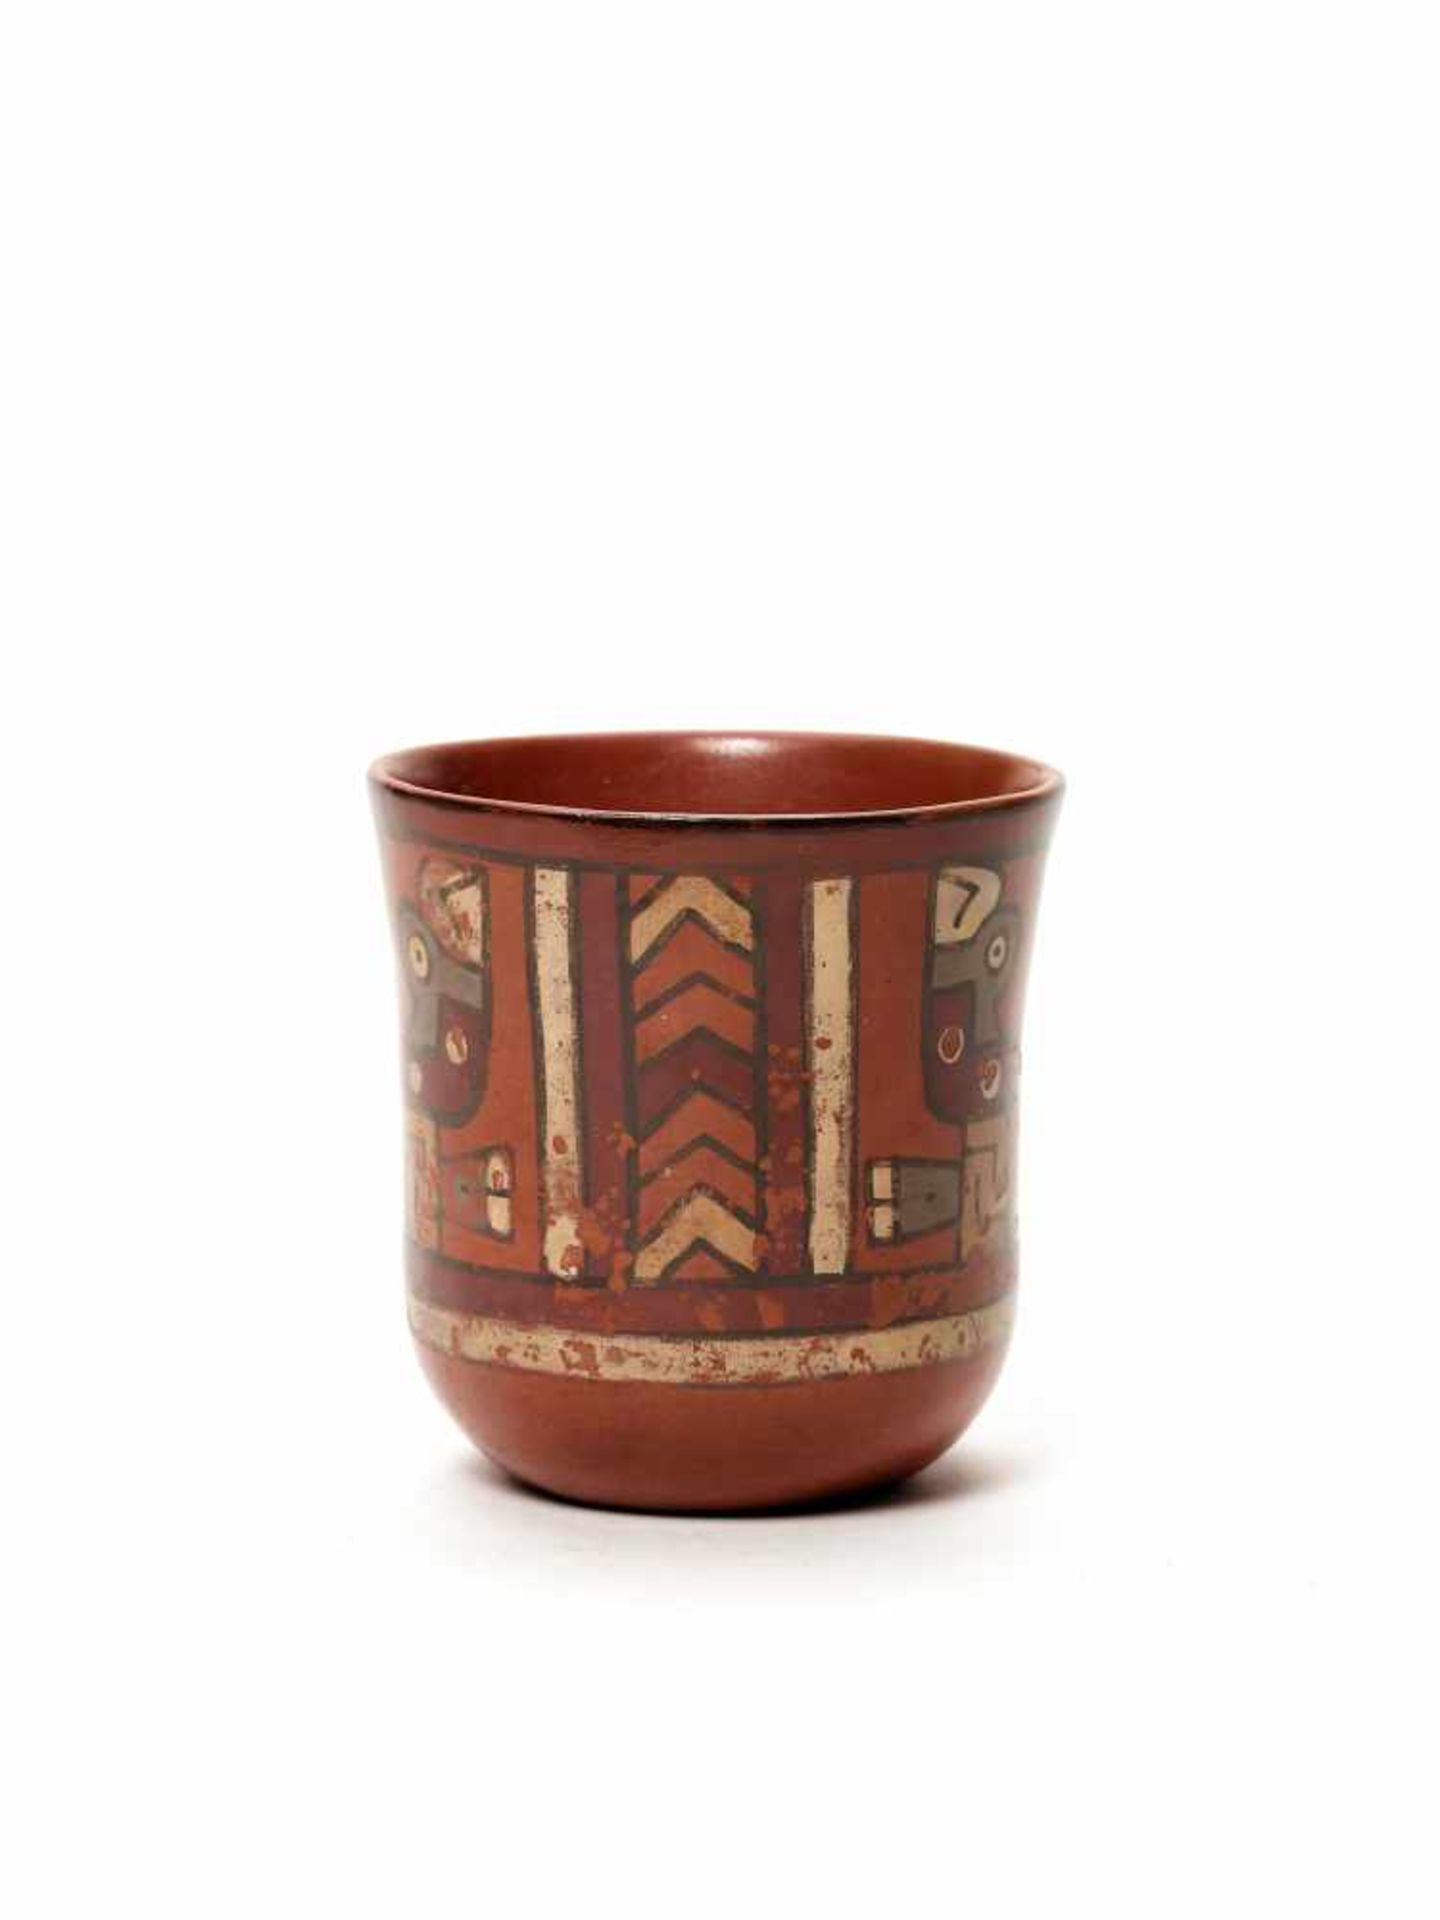 THREE CUPS AND A VESSEL- HUARI/ WARI CULTURE STYLE Painted clayHuari/ Wari culture style, Peru, - Image 9 of 13